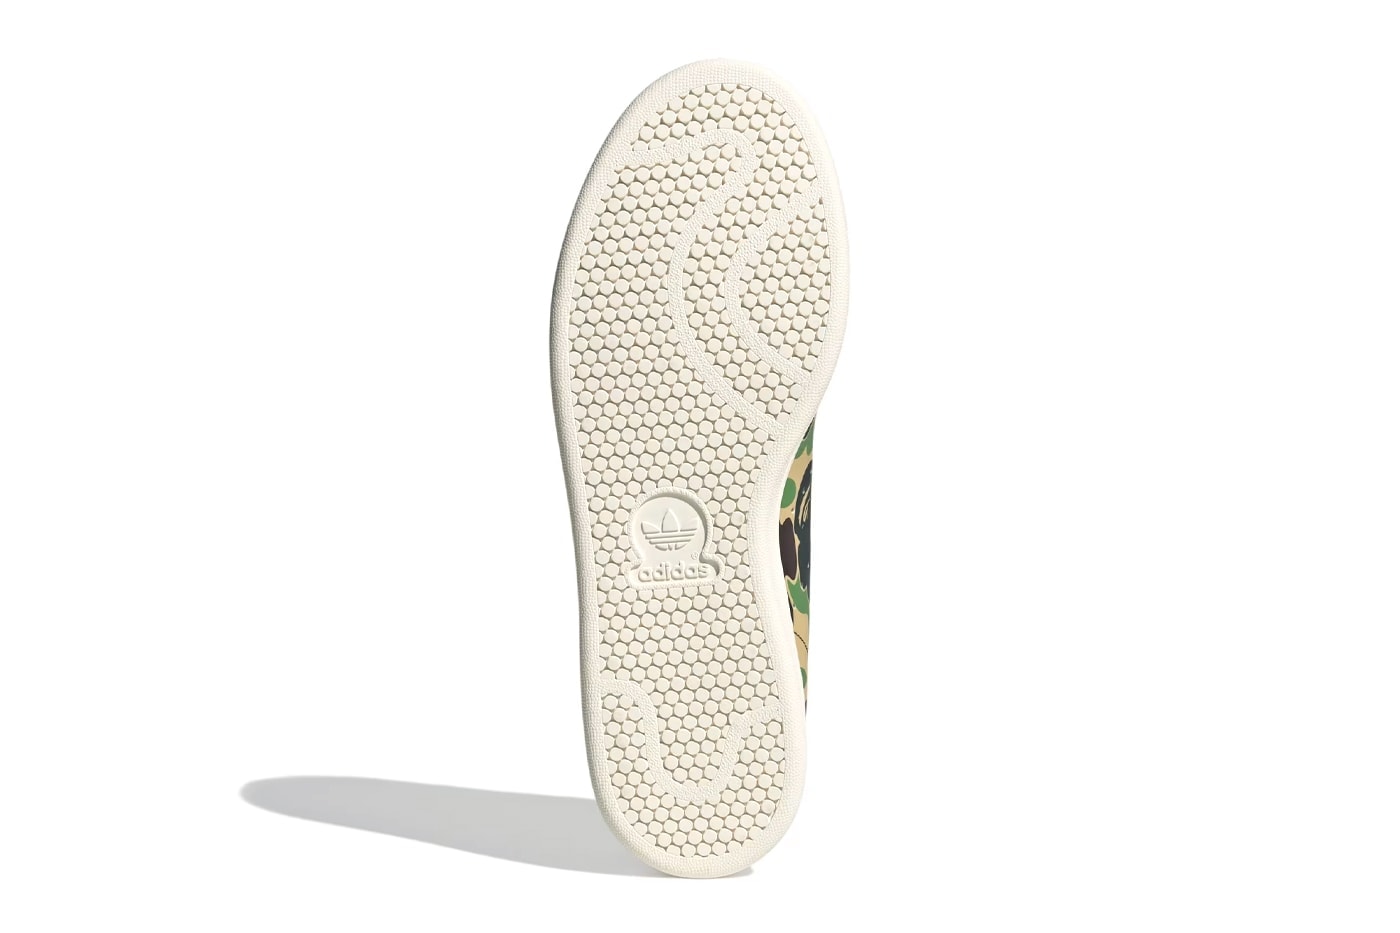 A BATHING APE® x adidas Stan Smith 全新聯名鞋款登場